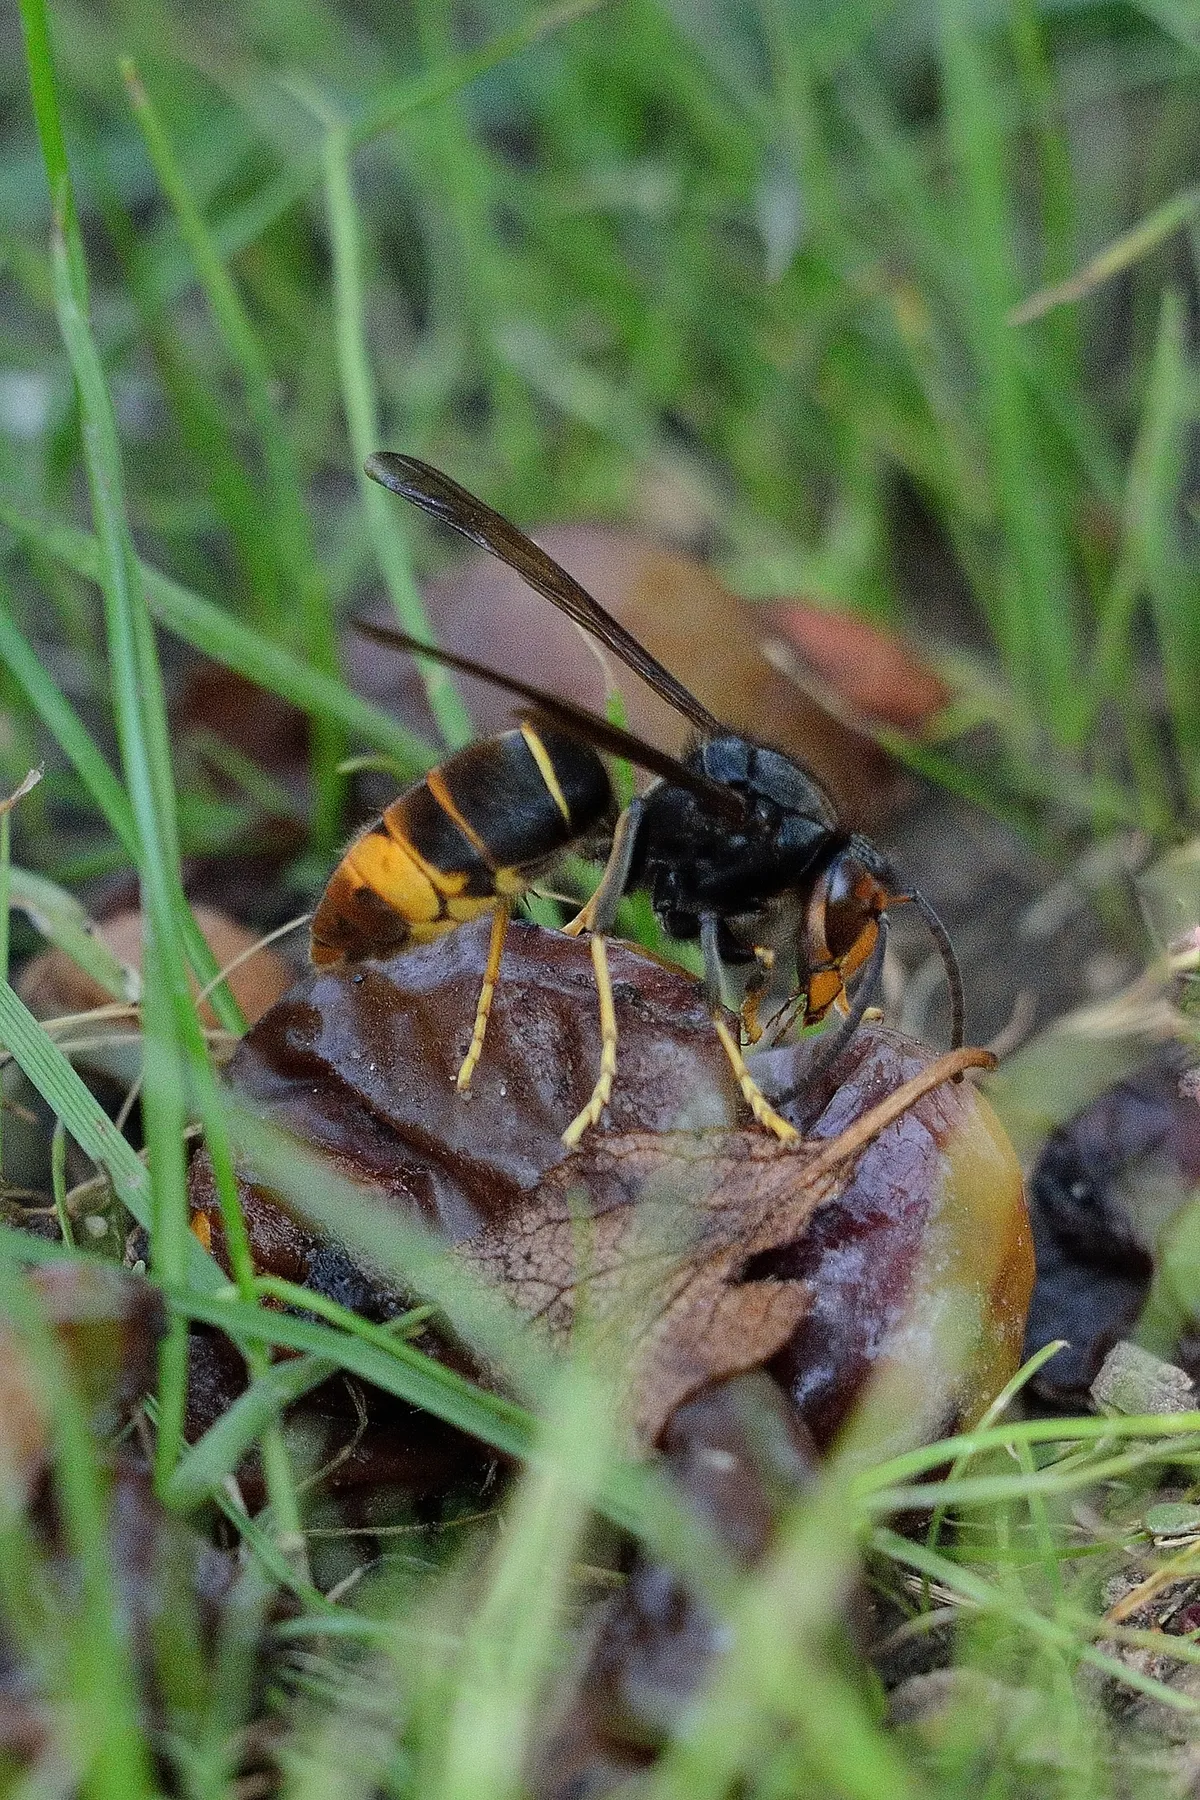 An Asian hornet on fallen fruit, amongst grass